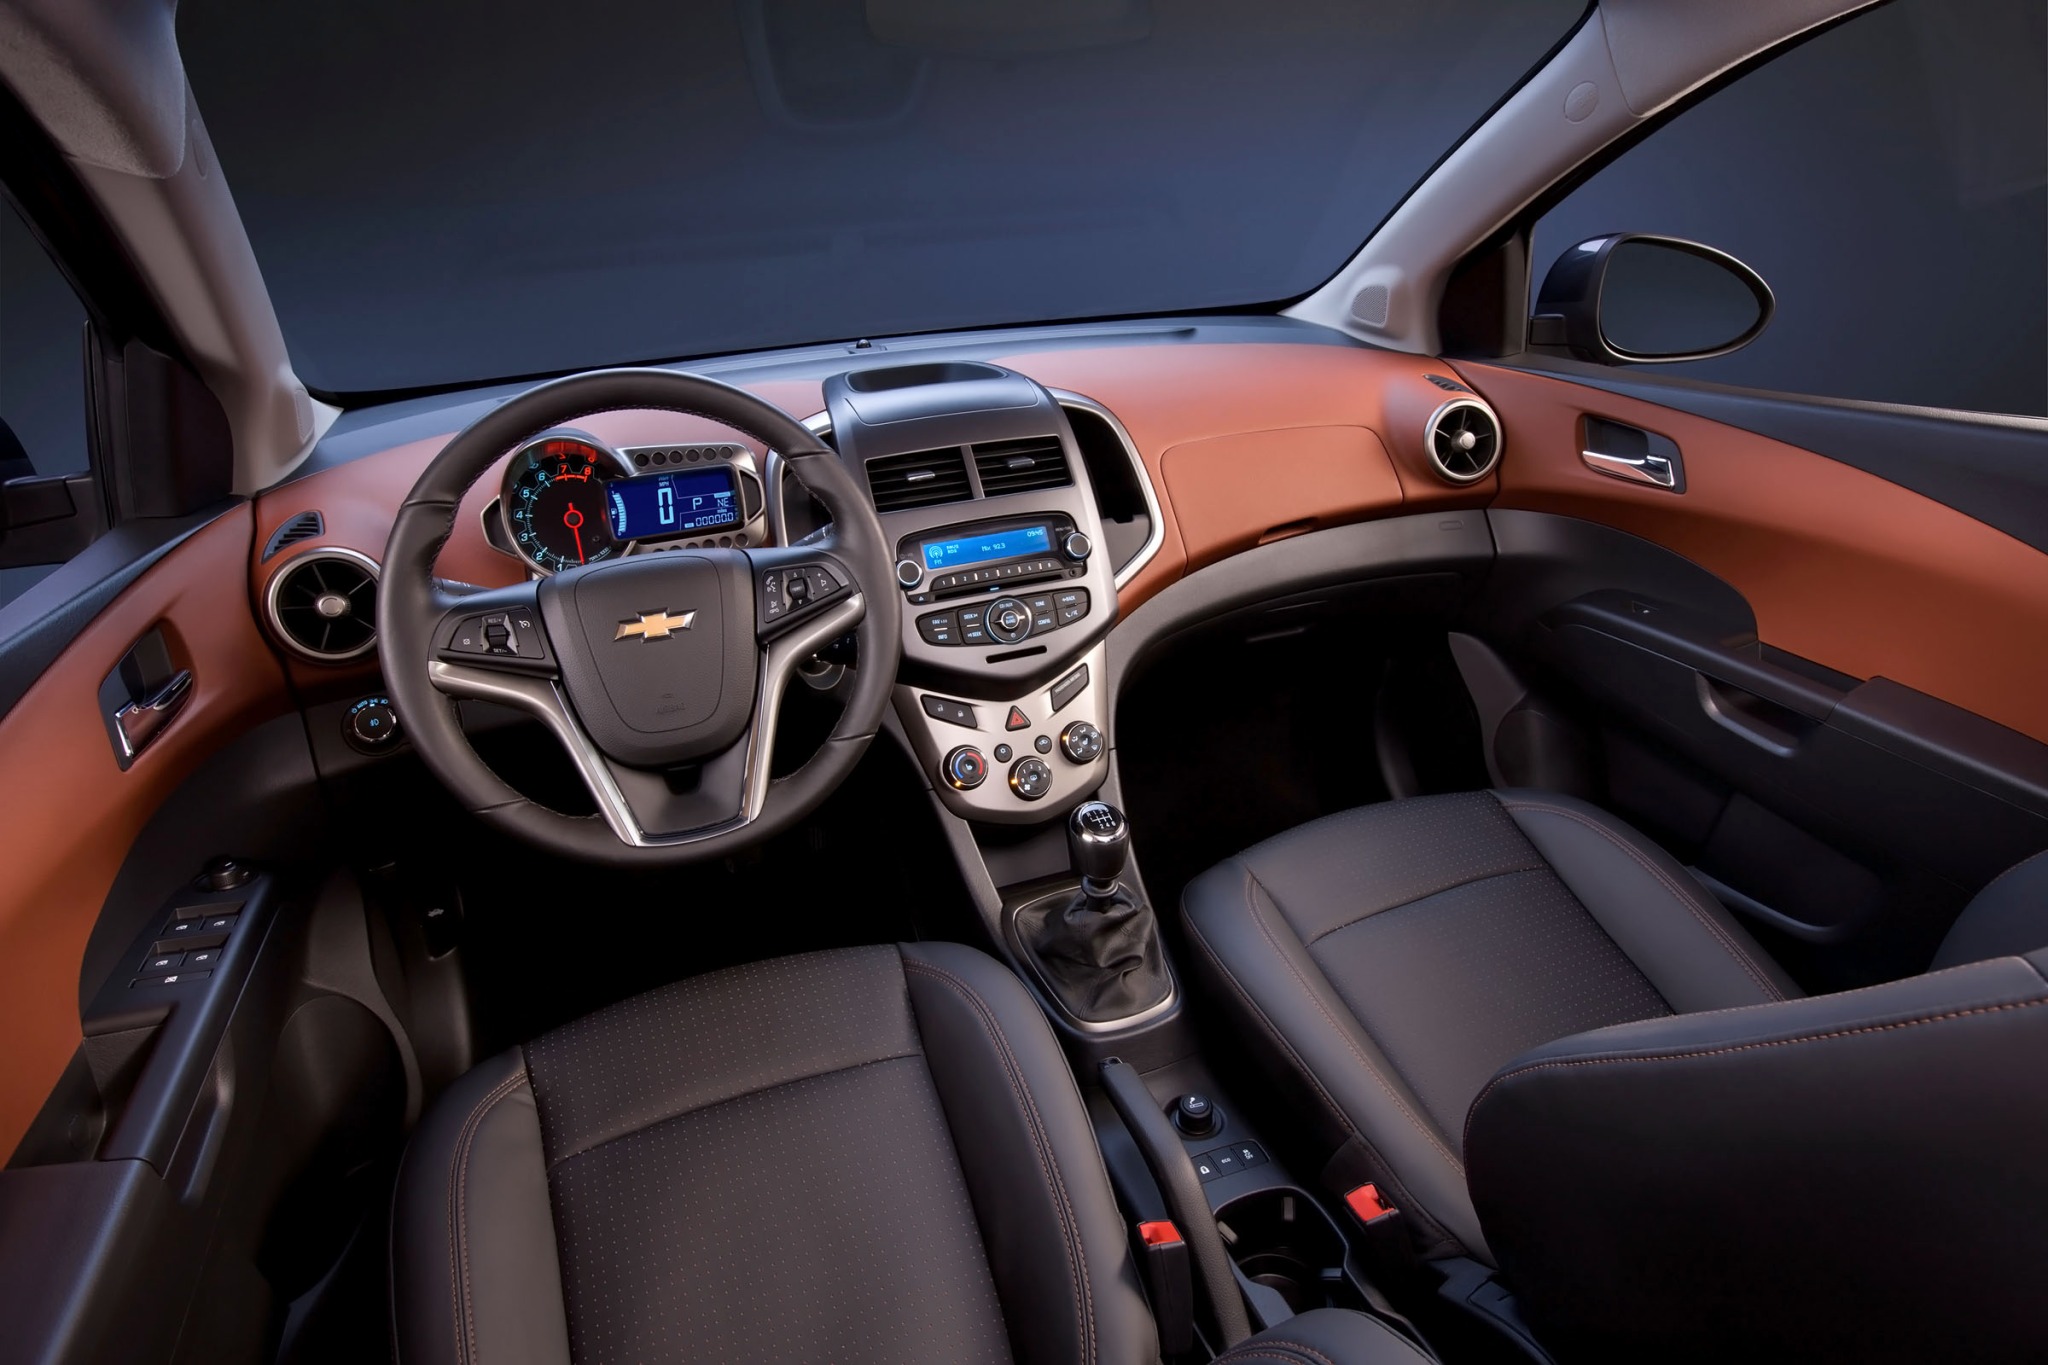 2013 Chevrolet Sonic LTZ 4dr Hatchback Interior